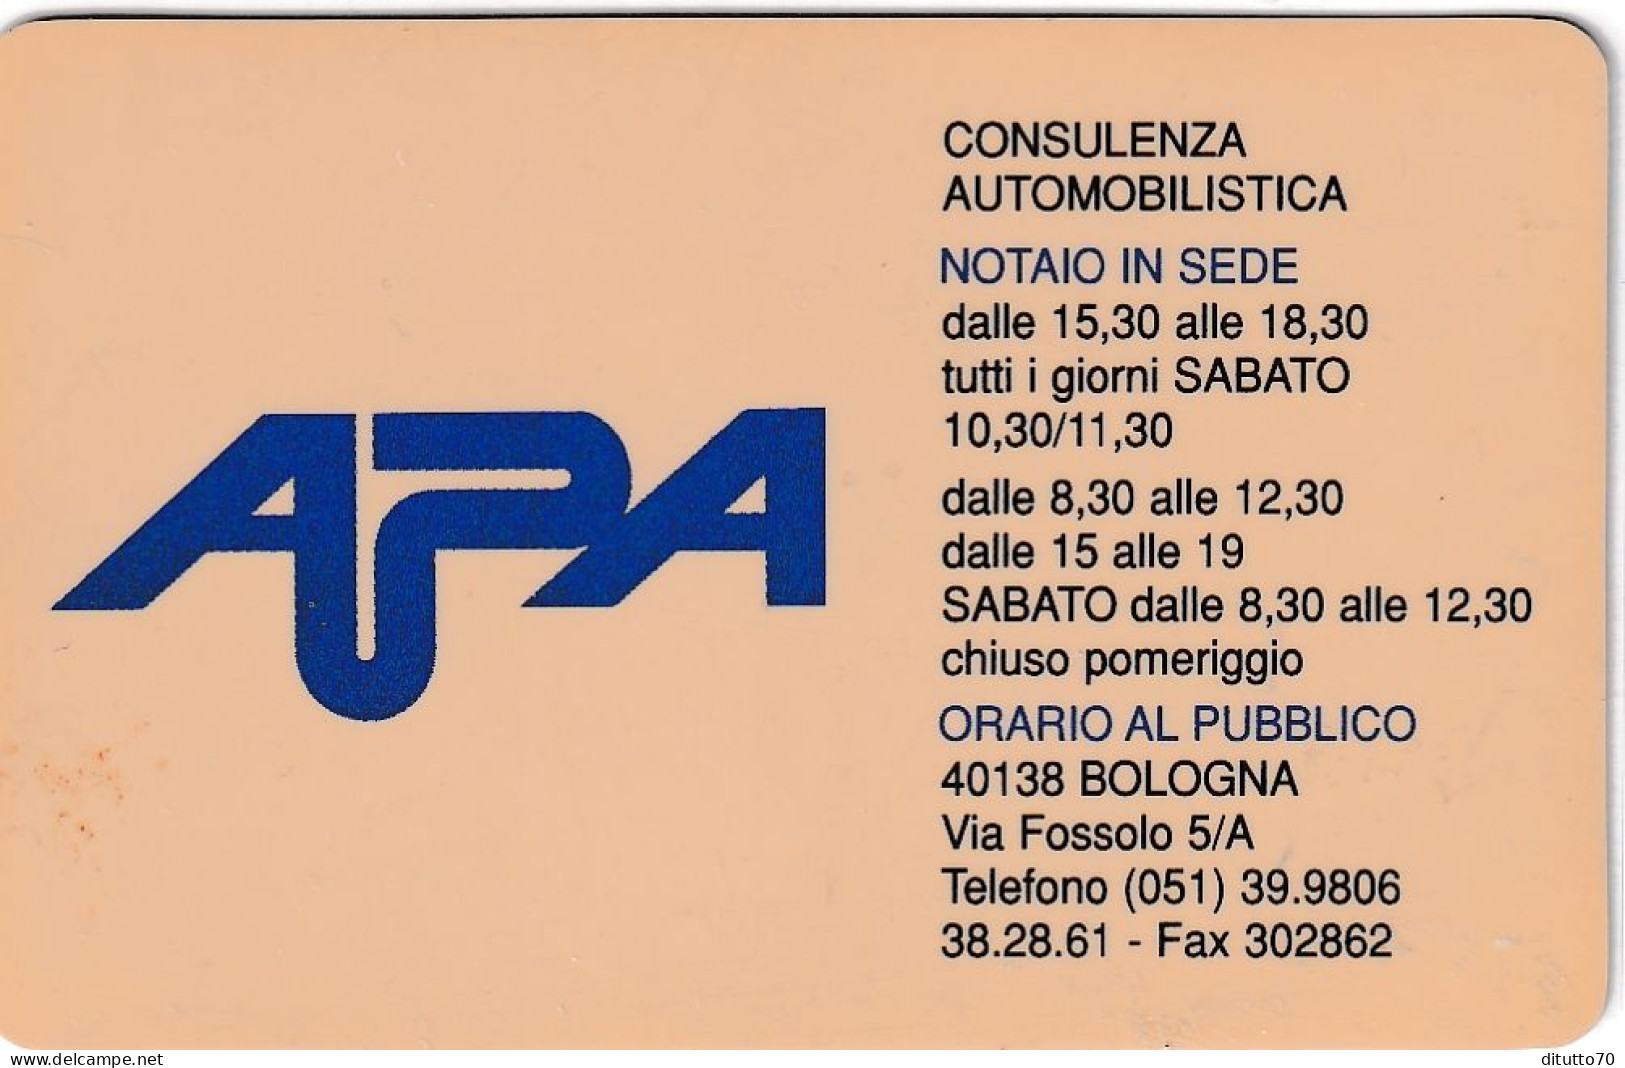 Calendarietto - Apa - Consulenza Automobilistica - Bologna - Anno 1998 - Kleinformat : 1991-00